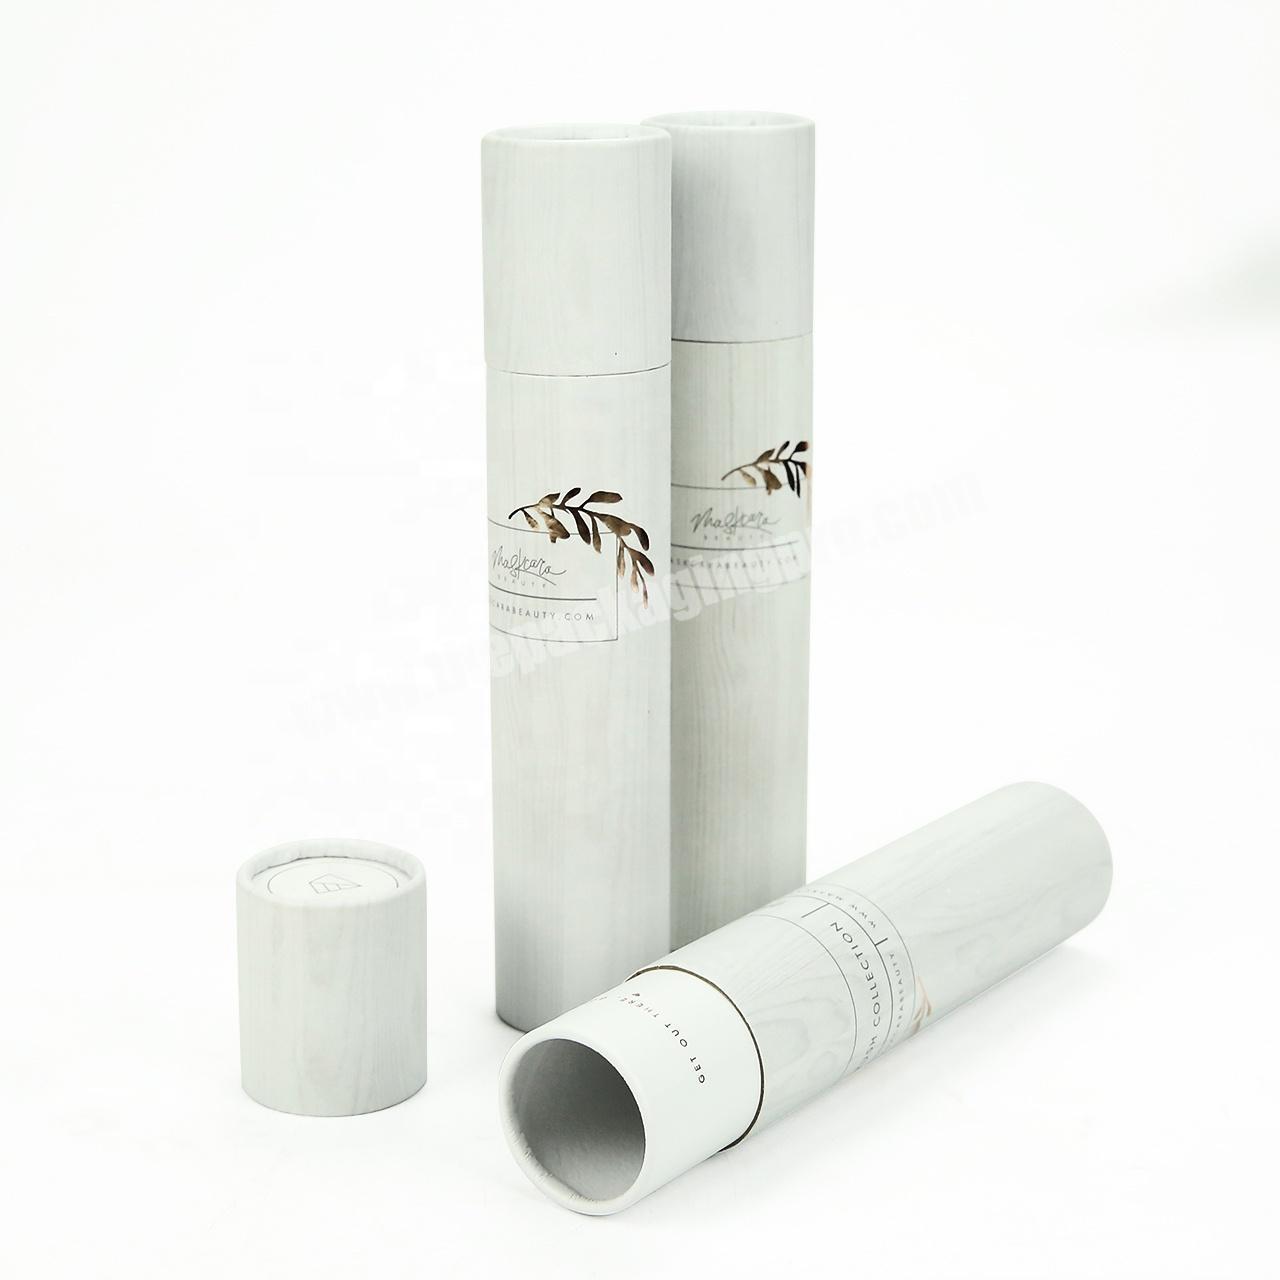 Custom printed cardboard skin care paper tube for makeup brush